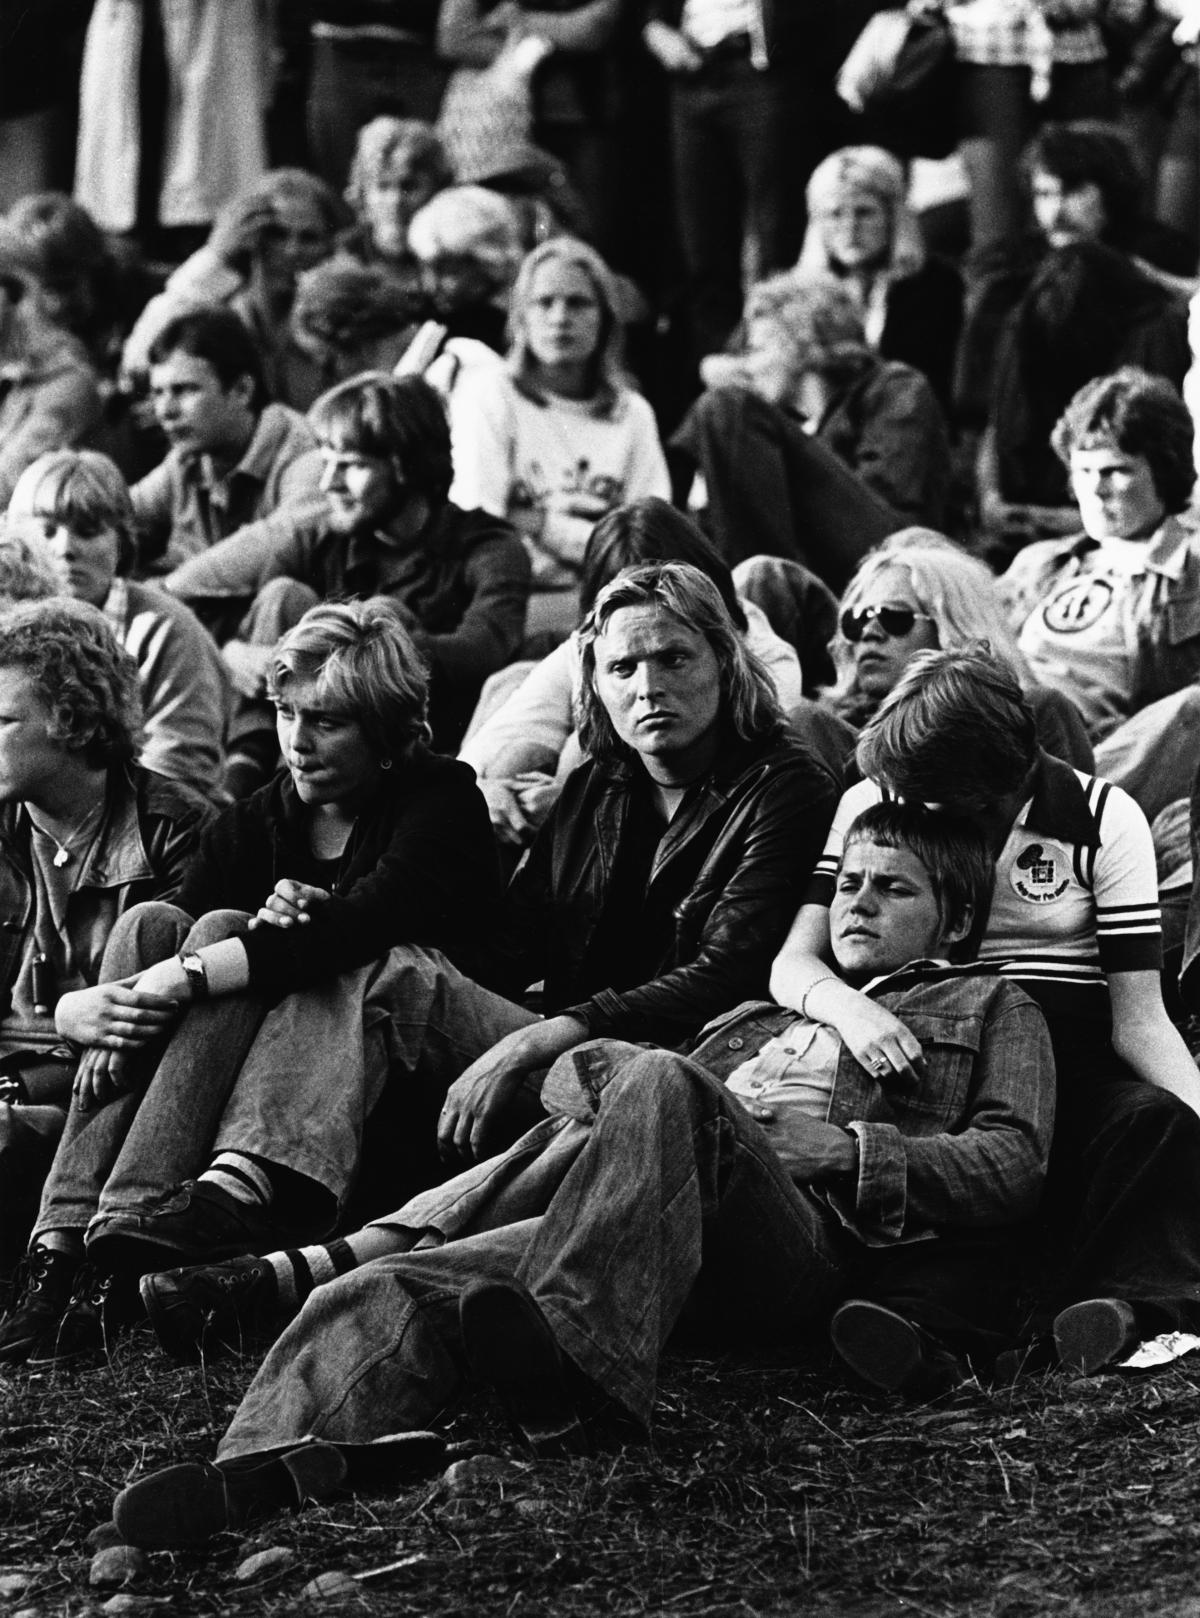 Nuorta yleisöä ensimmäisessä Kaivopuiston rock-konsertissa vuonna 1978. Kuvaaja: Helsingin kaupunginmuseo / Erkki Haapaniemi